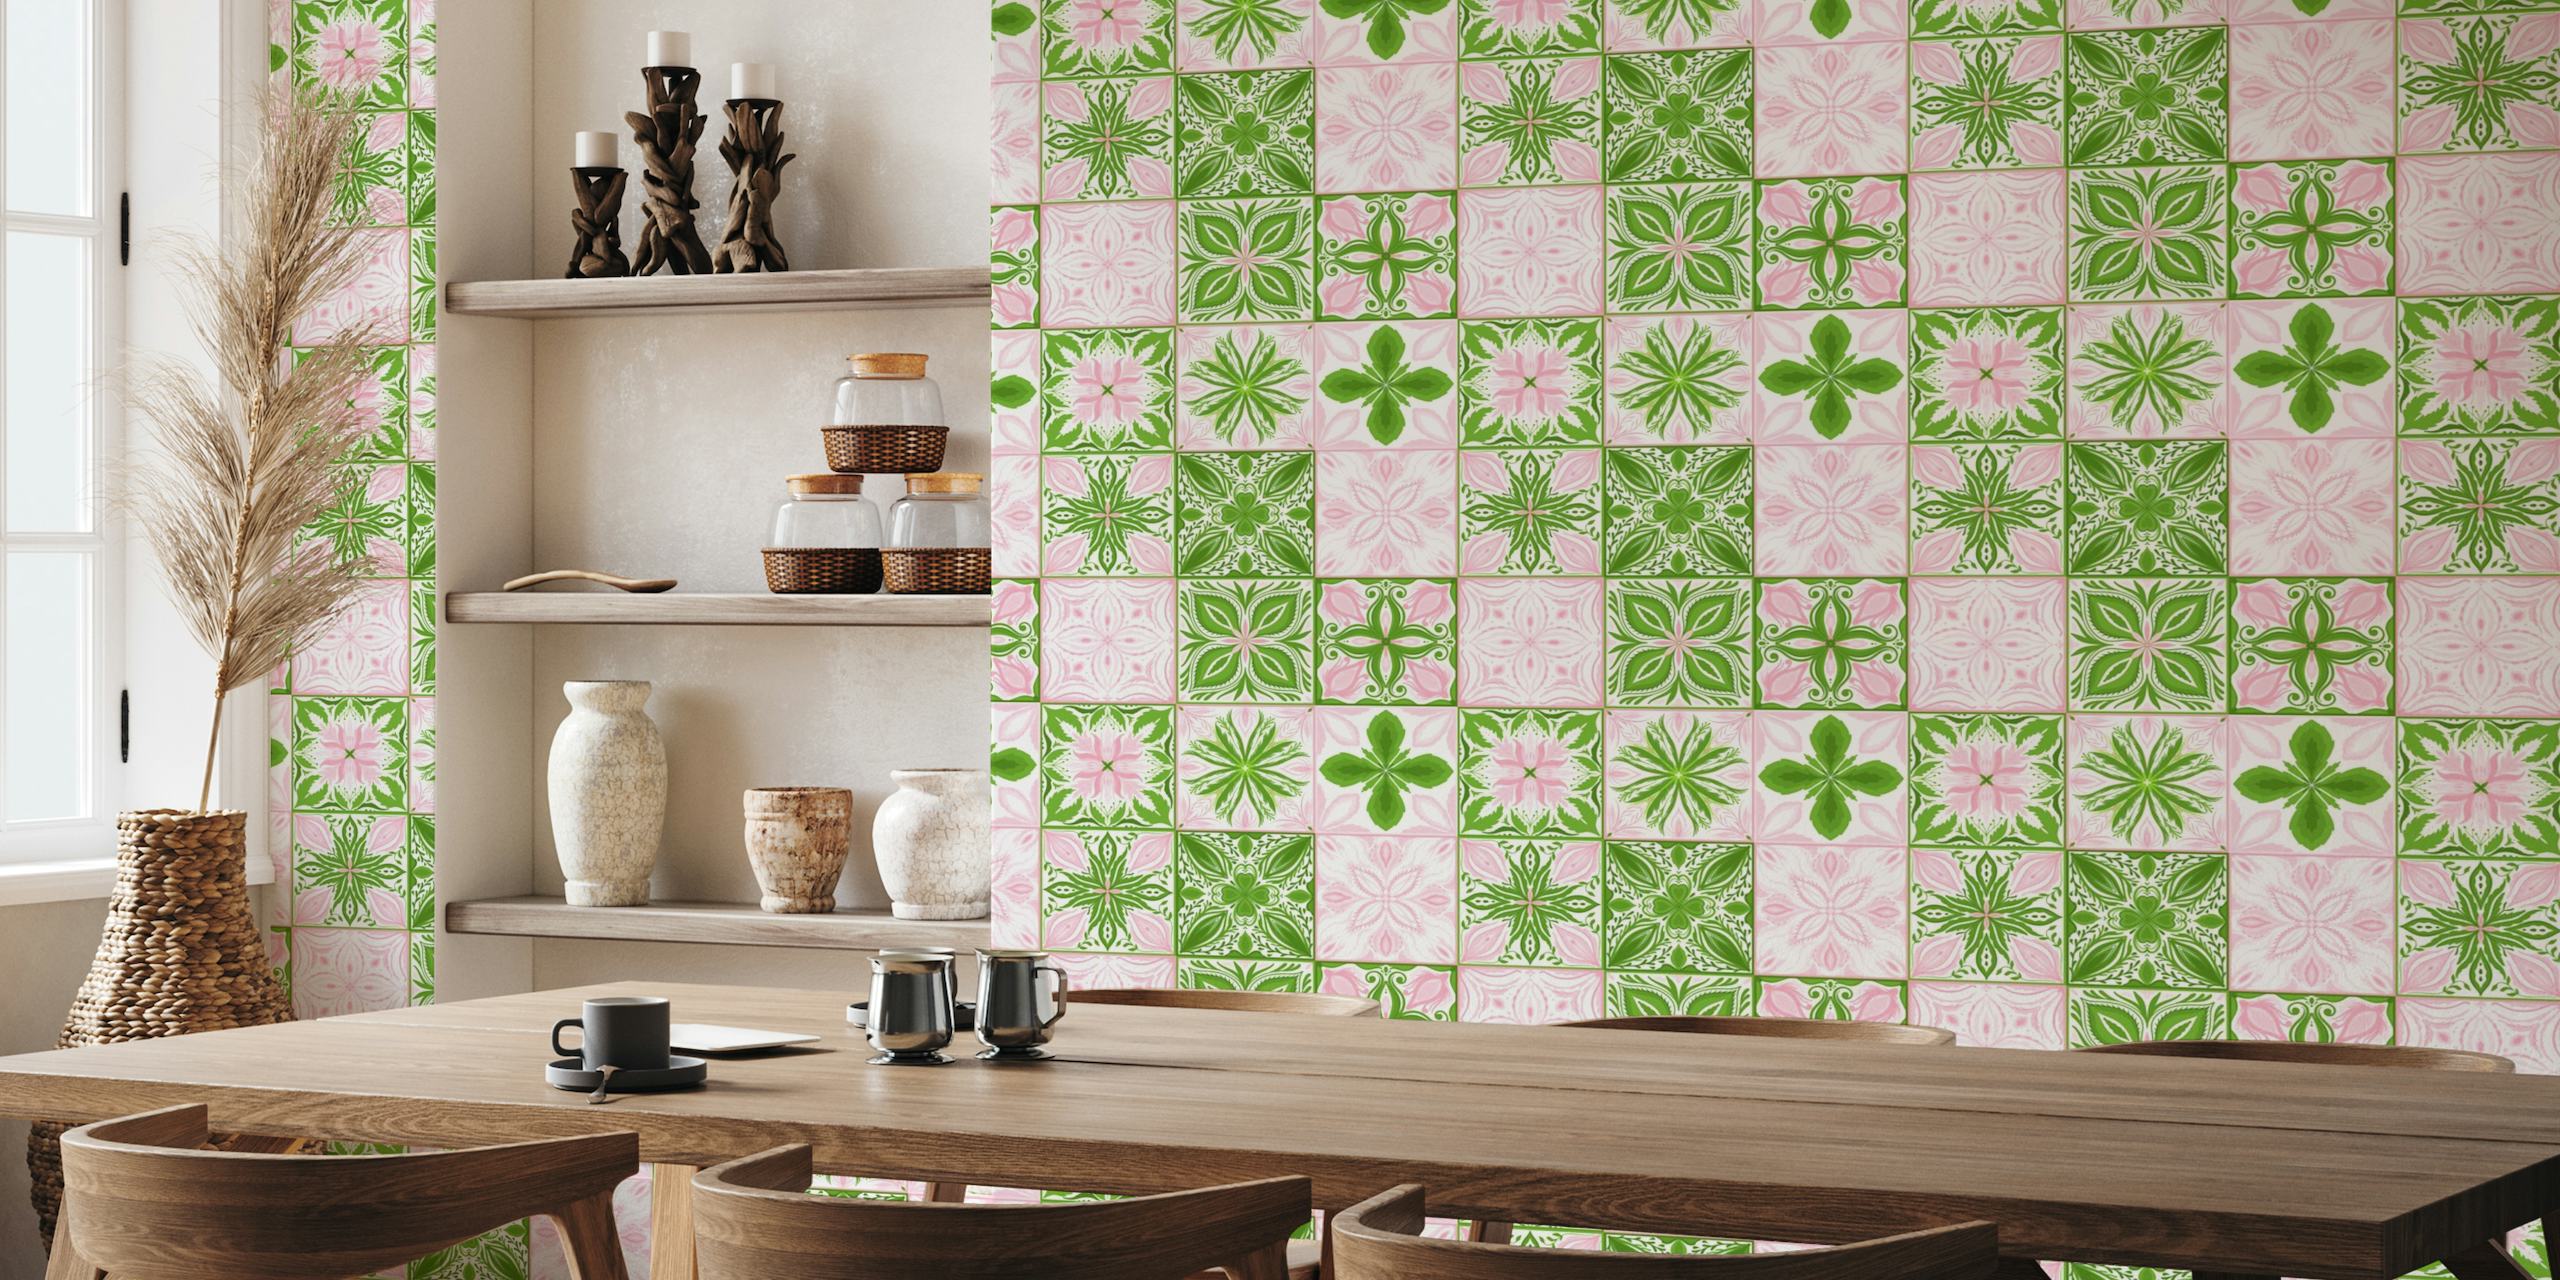 Ornate tiles in pink and green carta da parati